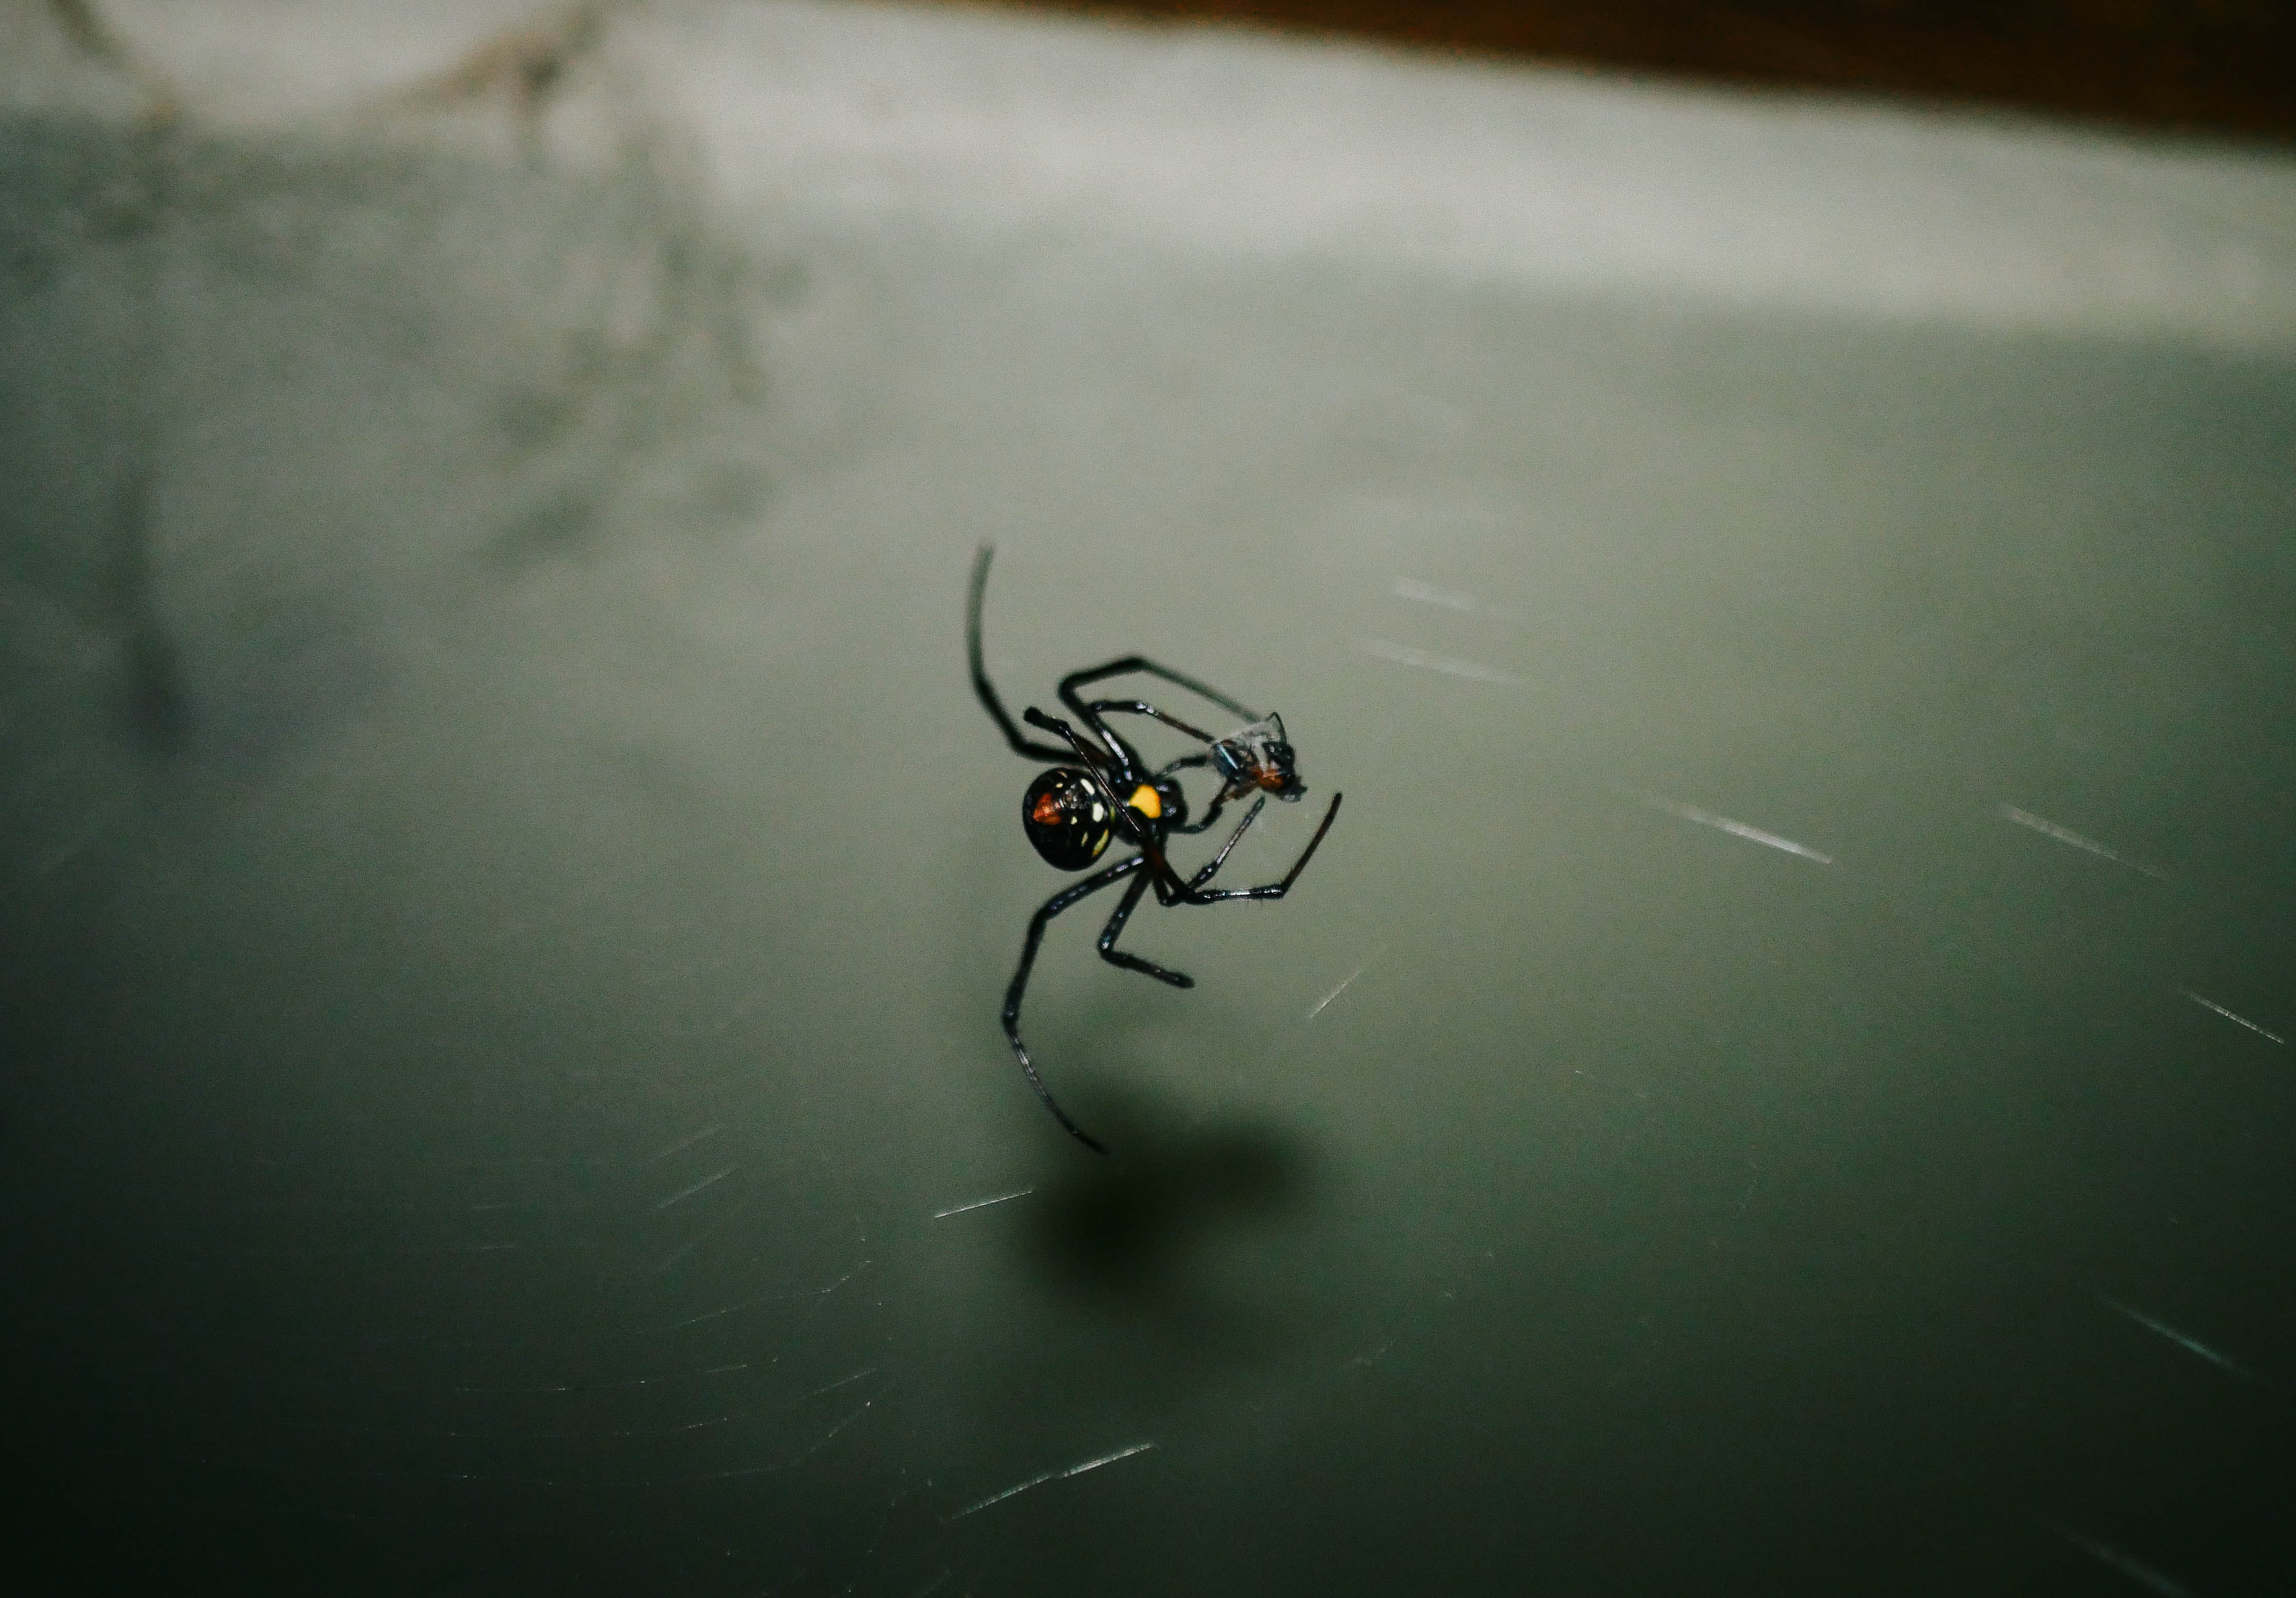 Crna udovica najotrovniji je pauk u Hrvatskoj